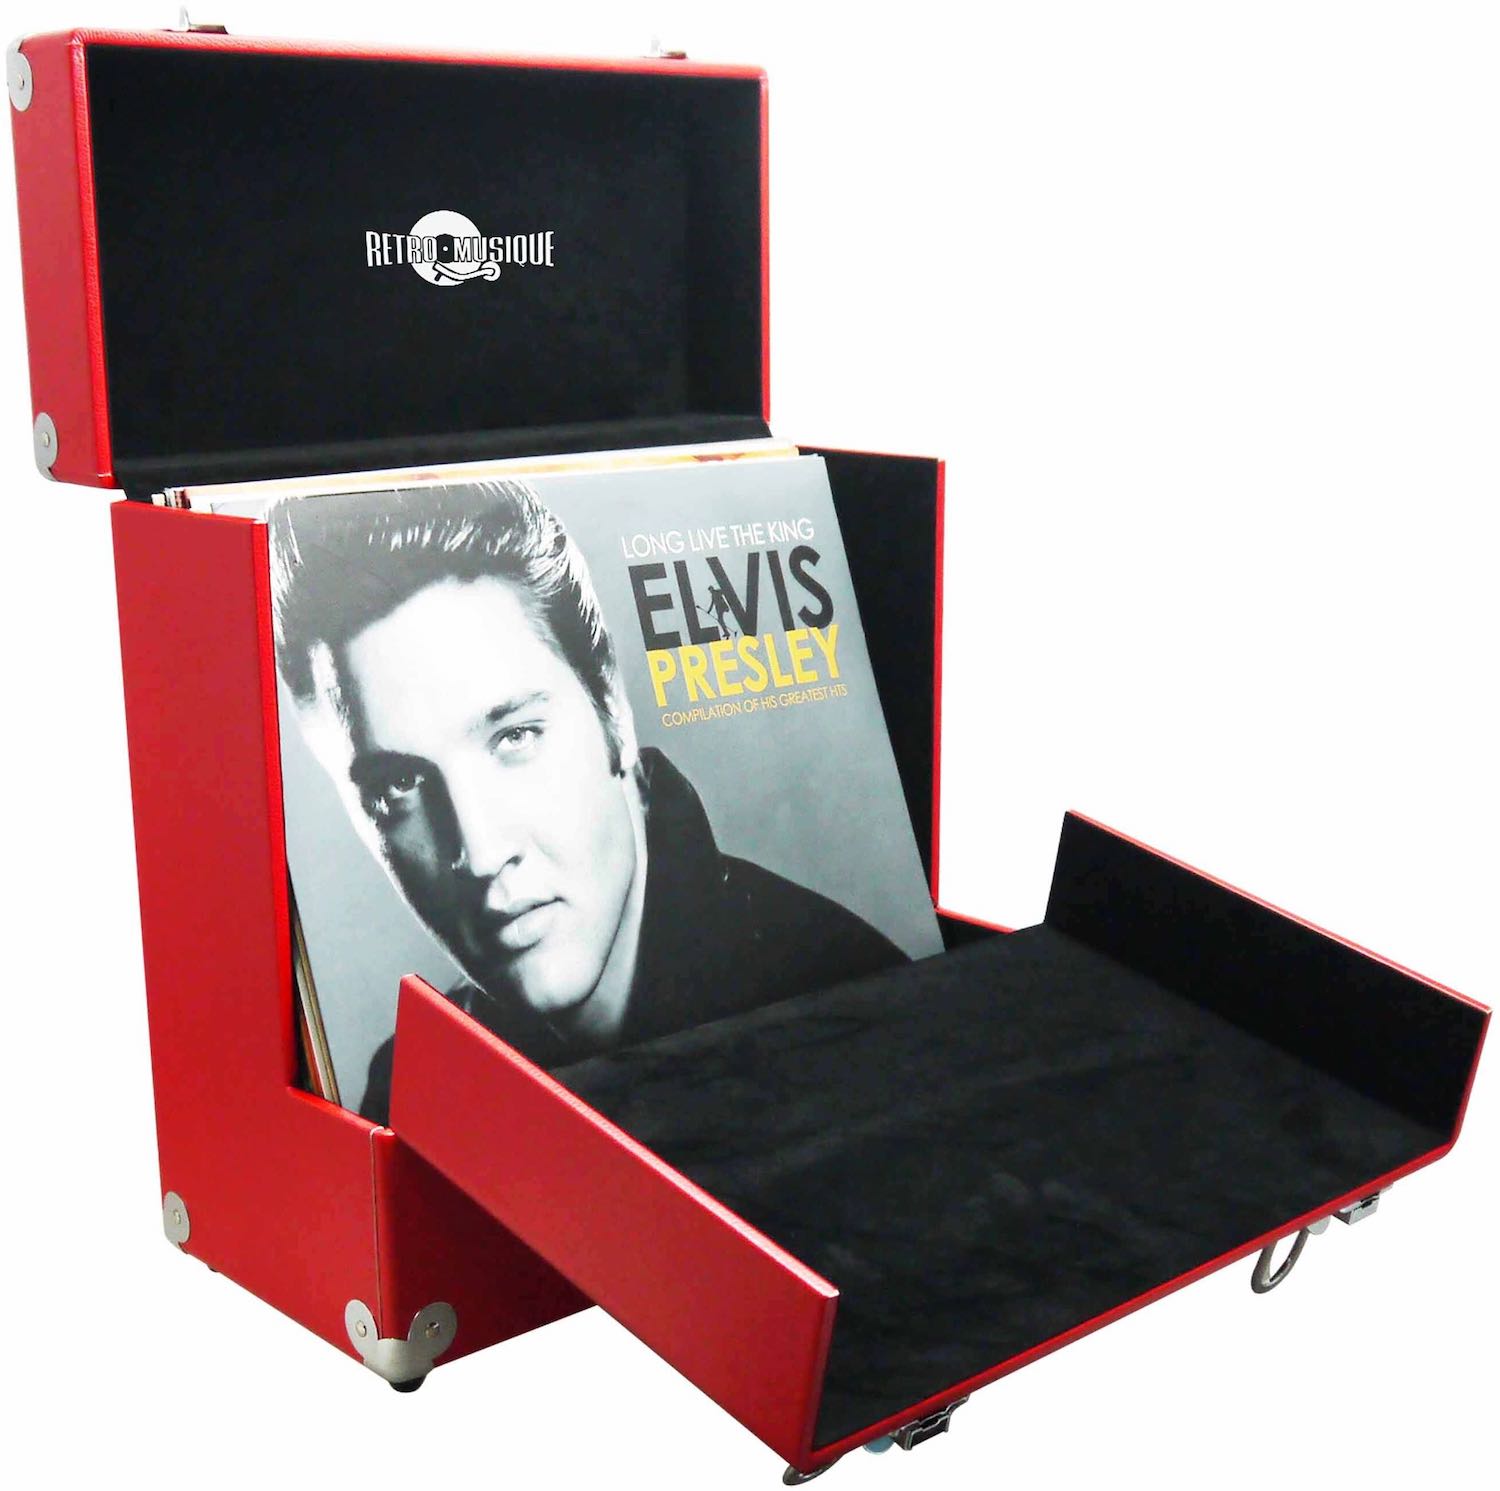 Фото № 1 Retro Musique Leather LP Vinyl Storage Case red - цены, наличие, отзывы в интернет-магазине